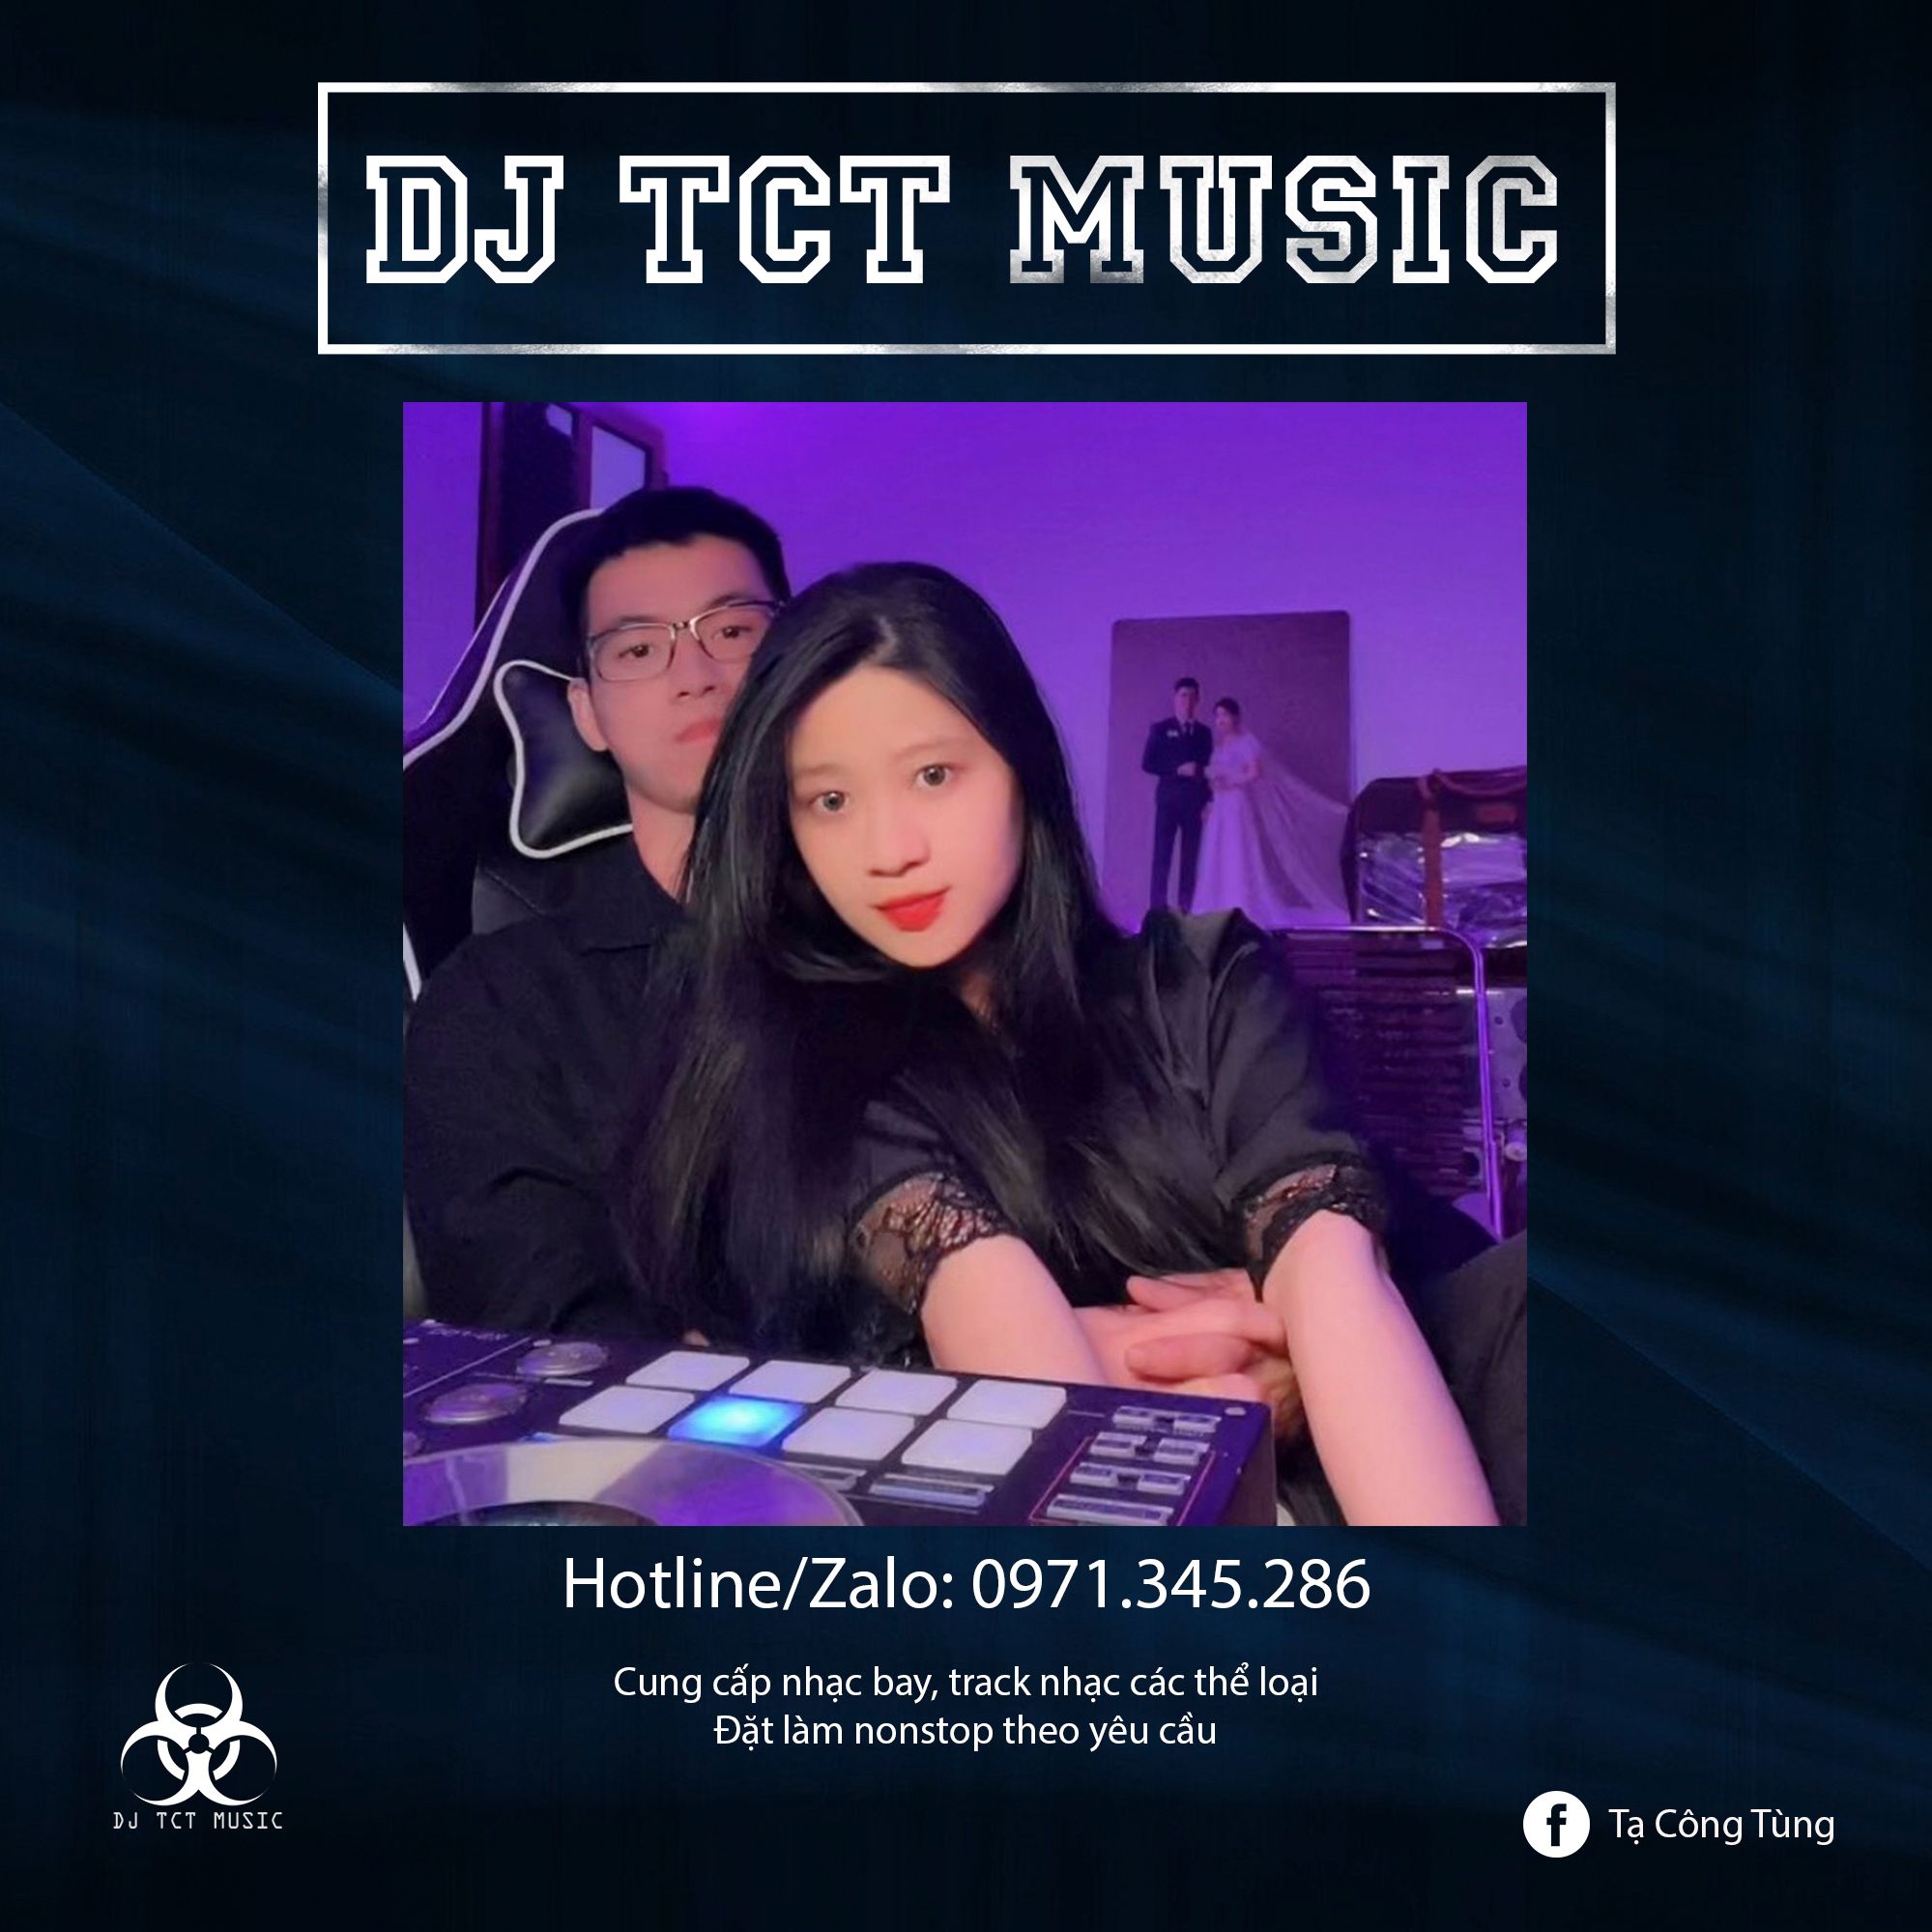 NONSTOP TÂY DU KÝ 2022 (Mua full 3 tiếng 0971345286) - DJ TCT MUSIC NHẠC BAY PHÒNG